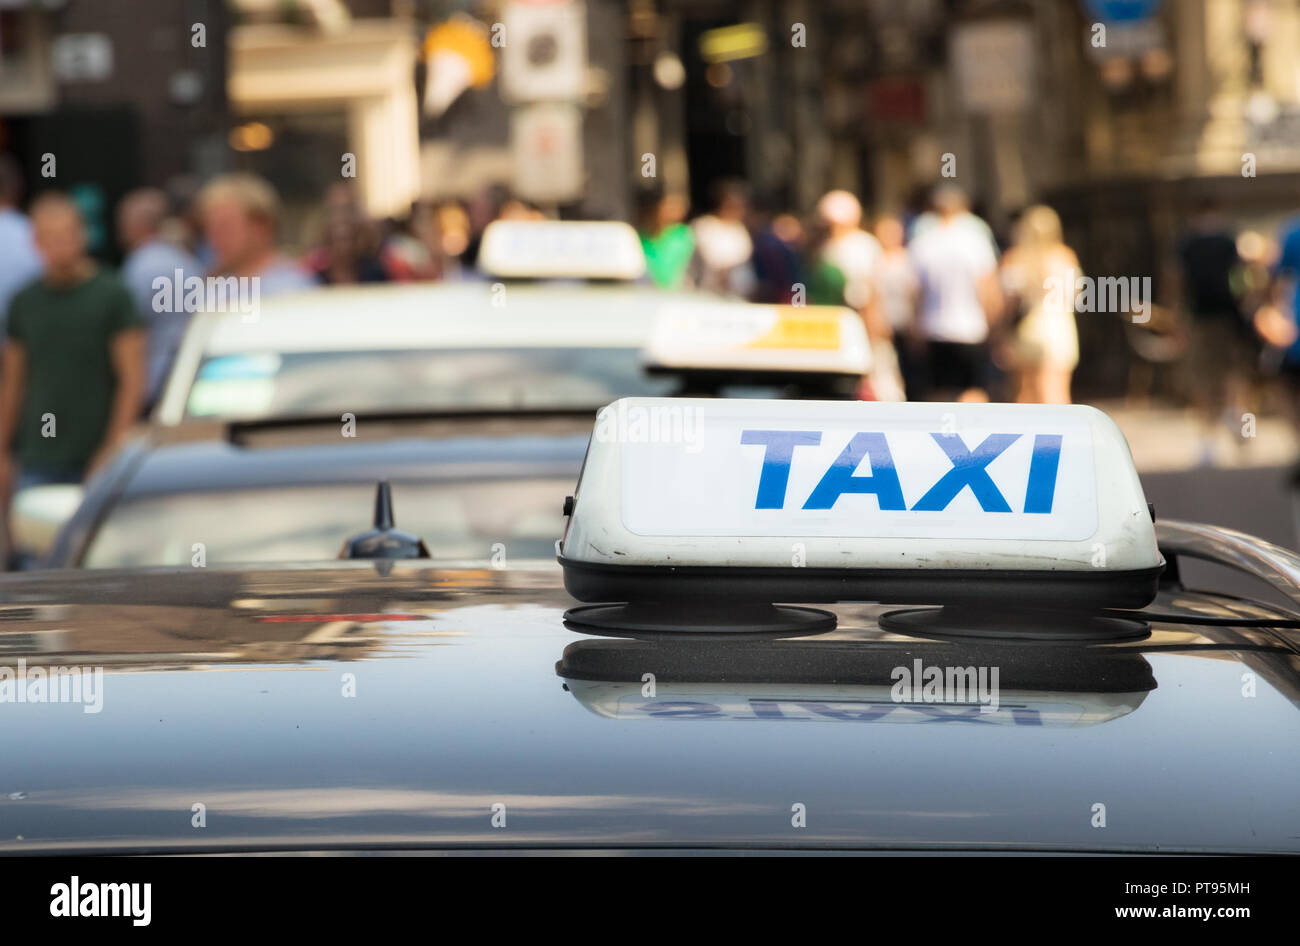 Ein taxi Schild mit blauer Brief auf einem Taxi Auto in Amsterdam,  Niederlande Stockfotografie - Alamy